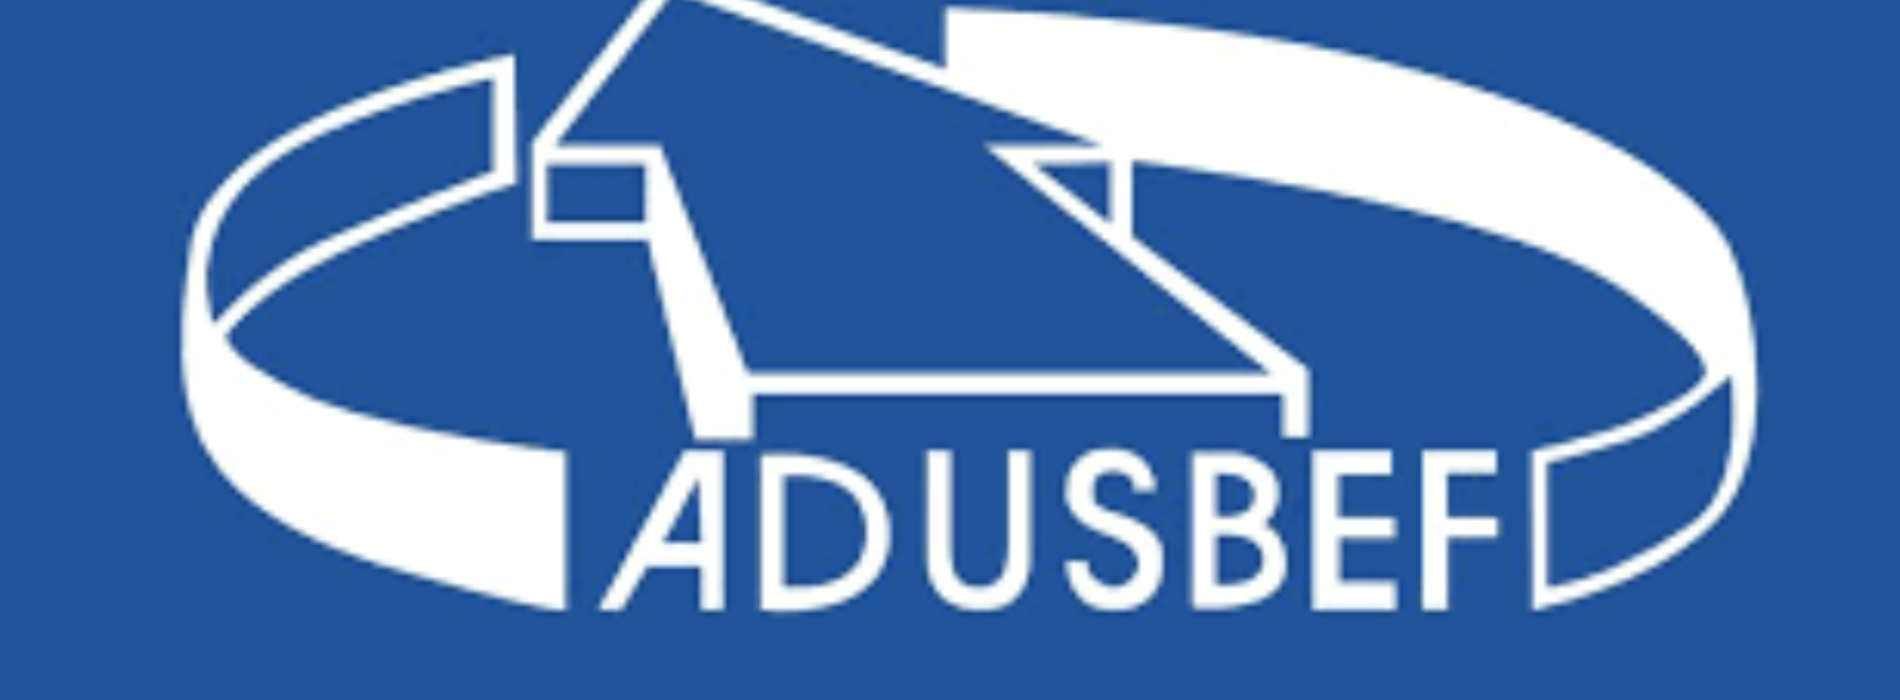 L’Adusbef incontra a Caserta azionisti, obbligazionisti e risparmiatori